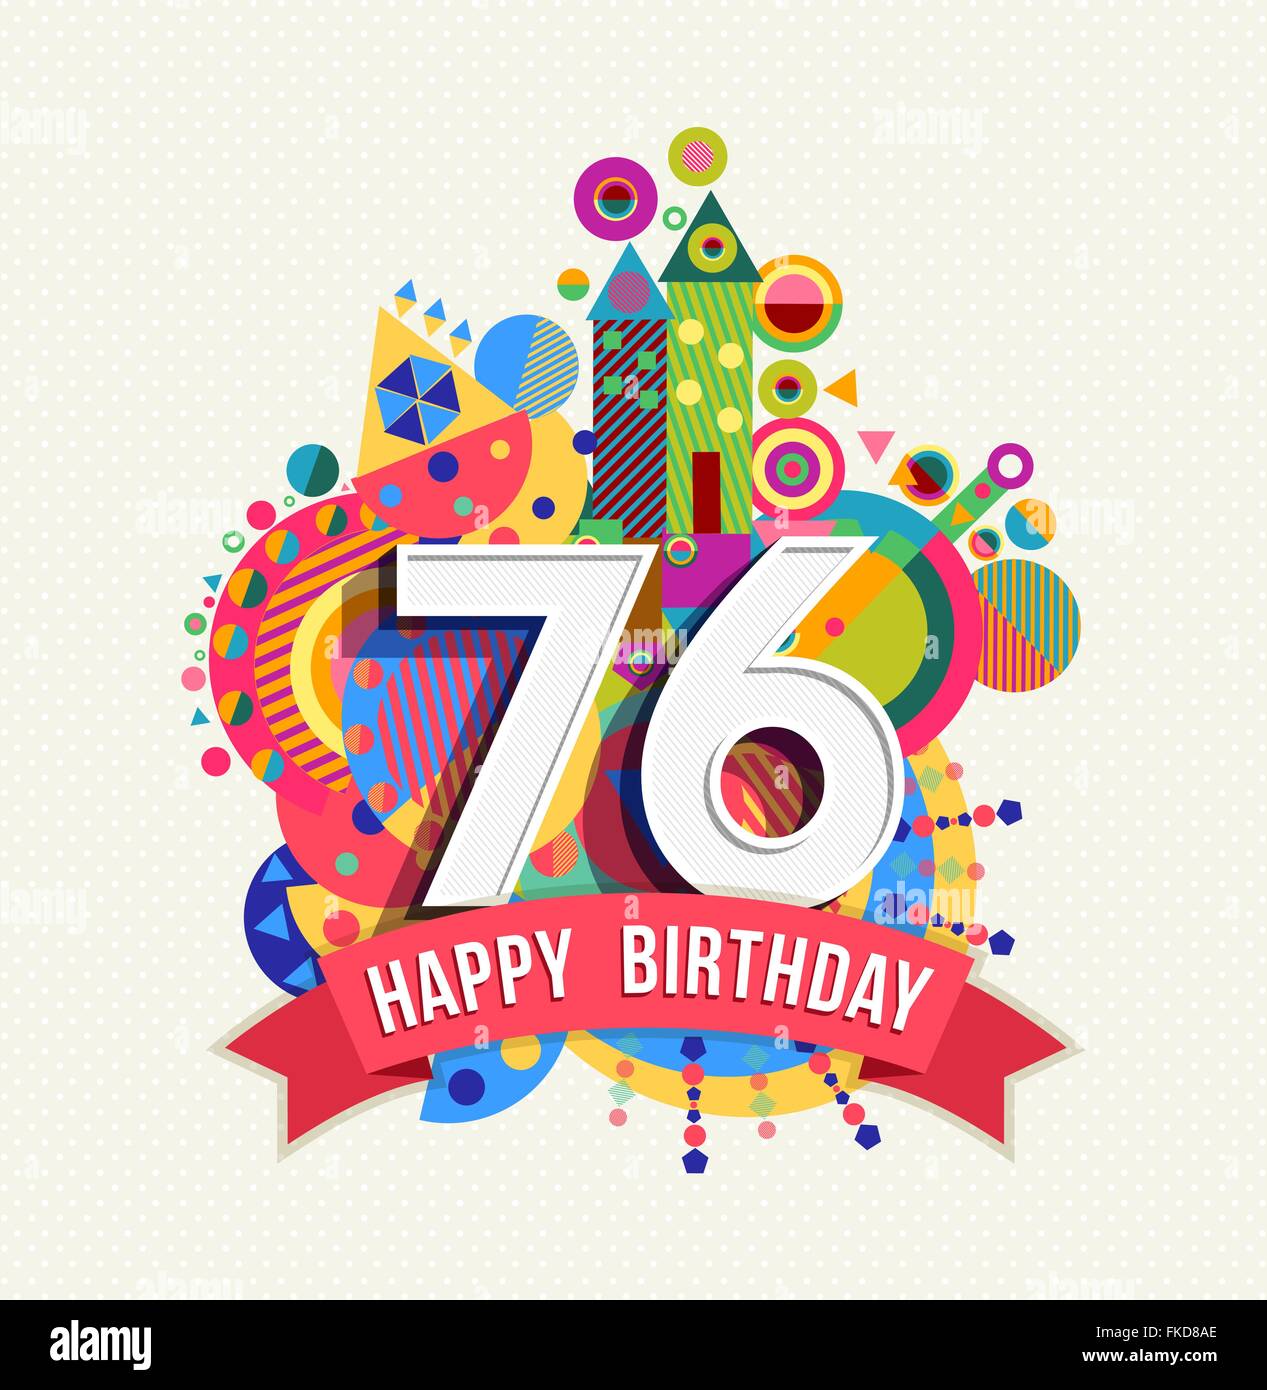 Happy Birthday 76 76 Jahr Spaß Feier Geburtstag Grußkarte mit Nummer, Beschriftung und bunte Geometrie Stock Vektor